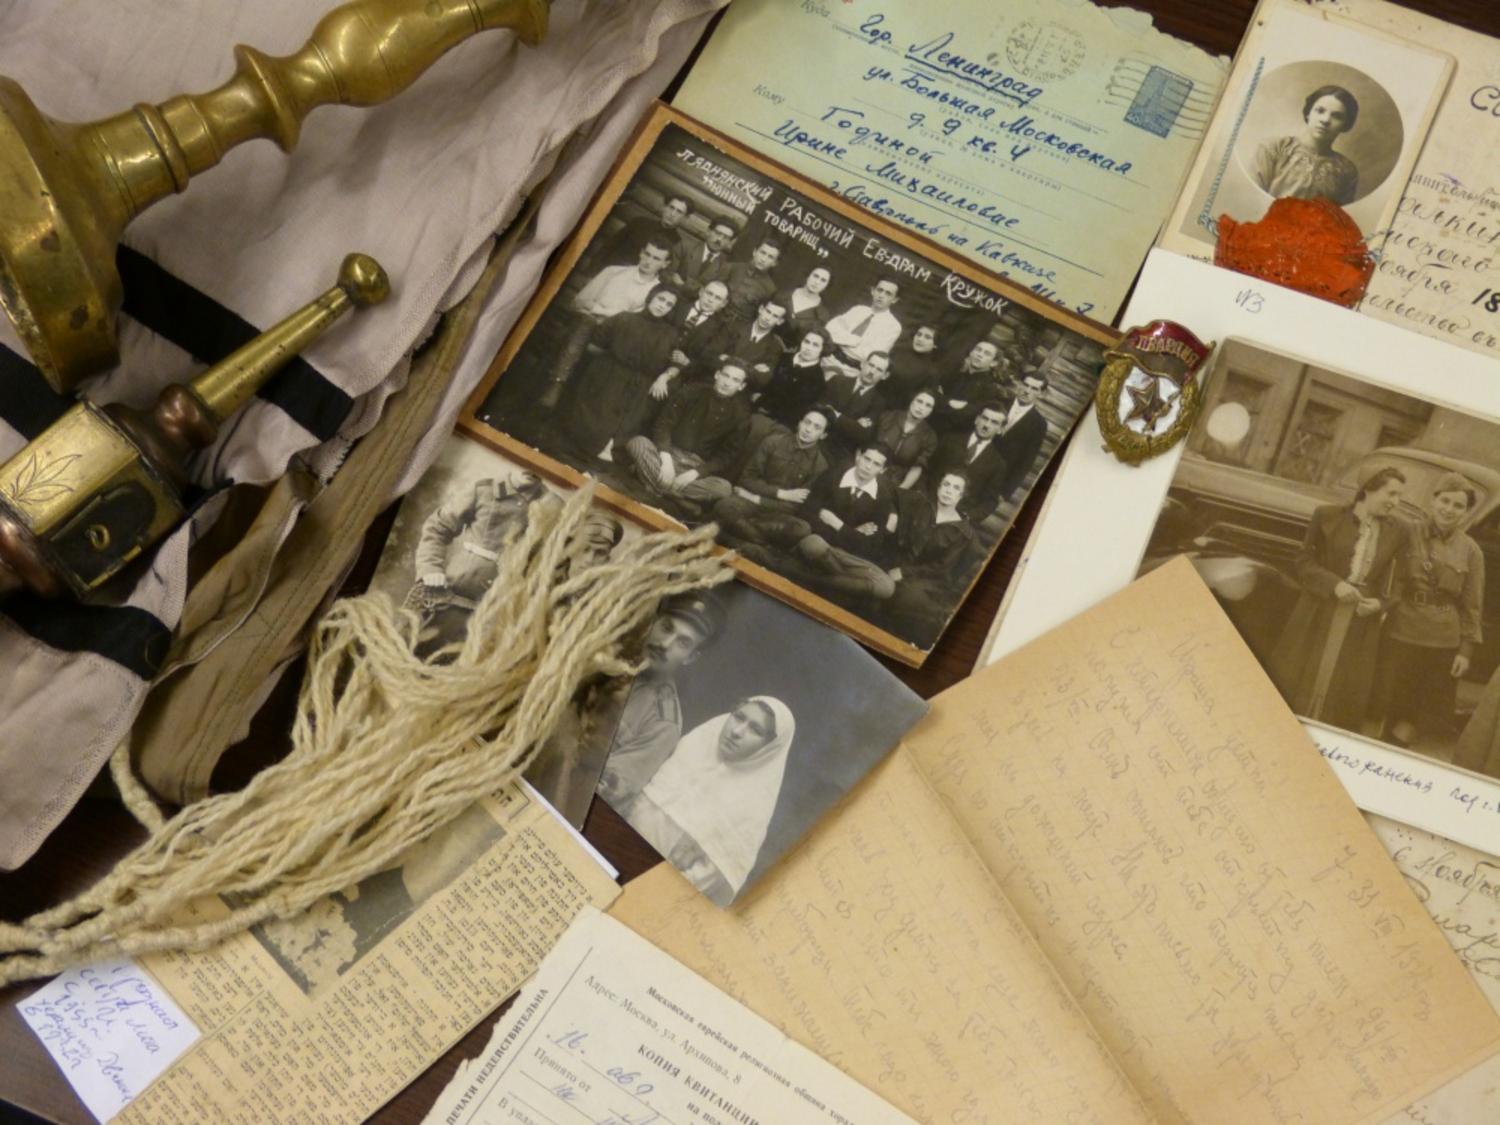 Еврейский музей и центр толерантности принимает вещи, документы и фотографии связанные с историей, верой, и повседневной жизнью евреев Российской Империи и Советского Союза